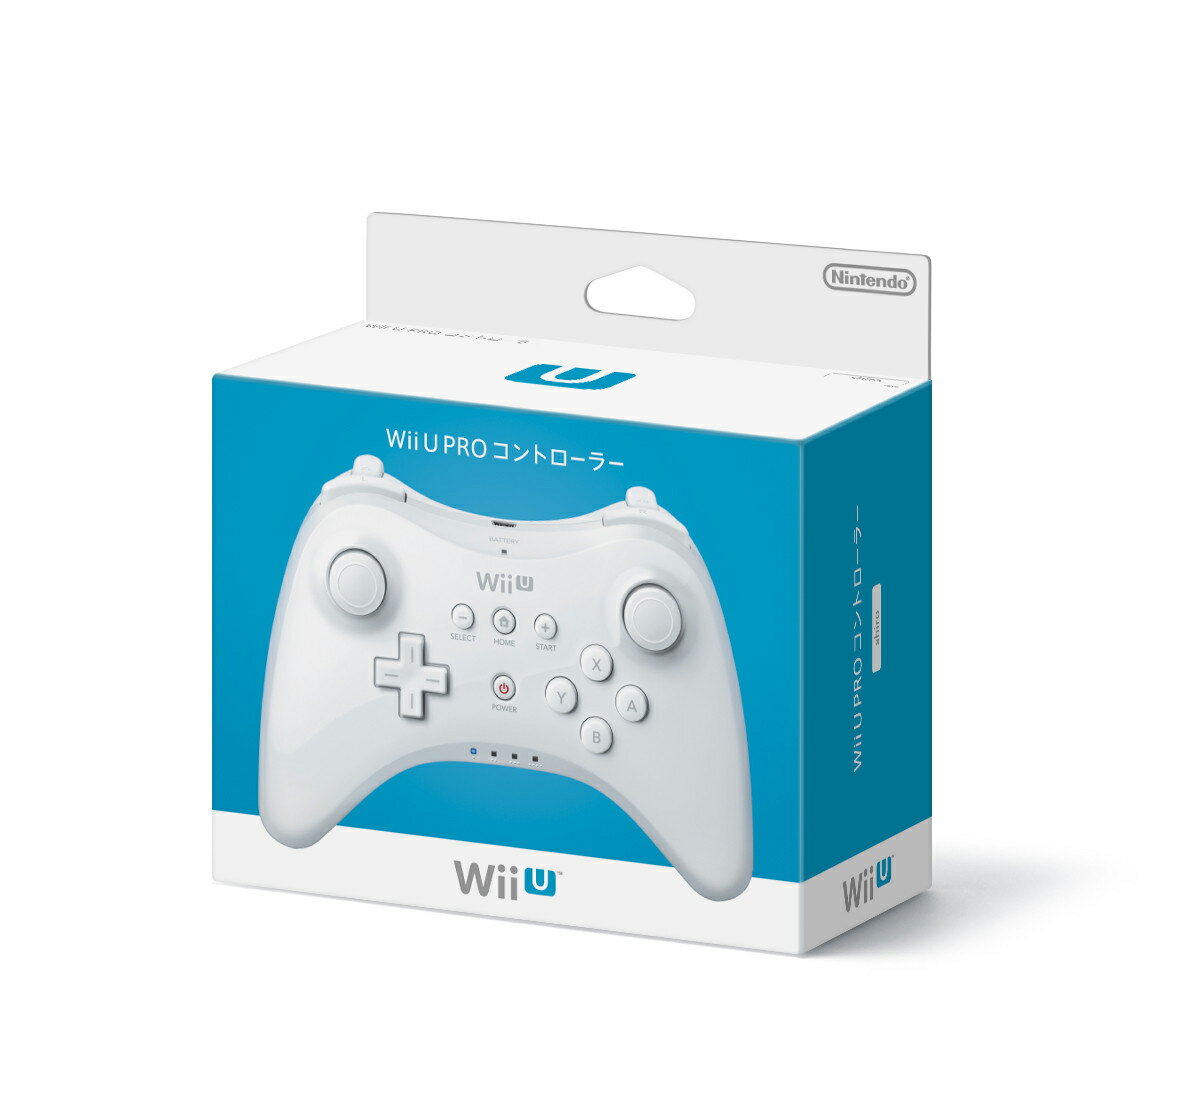 Wii U PRO コントローラー シロ (shiro)の画像